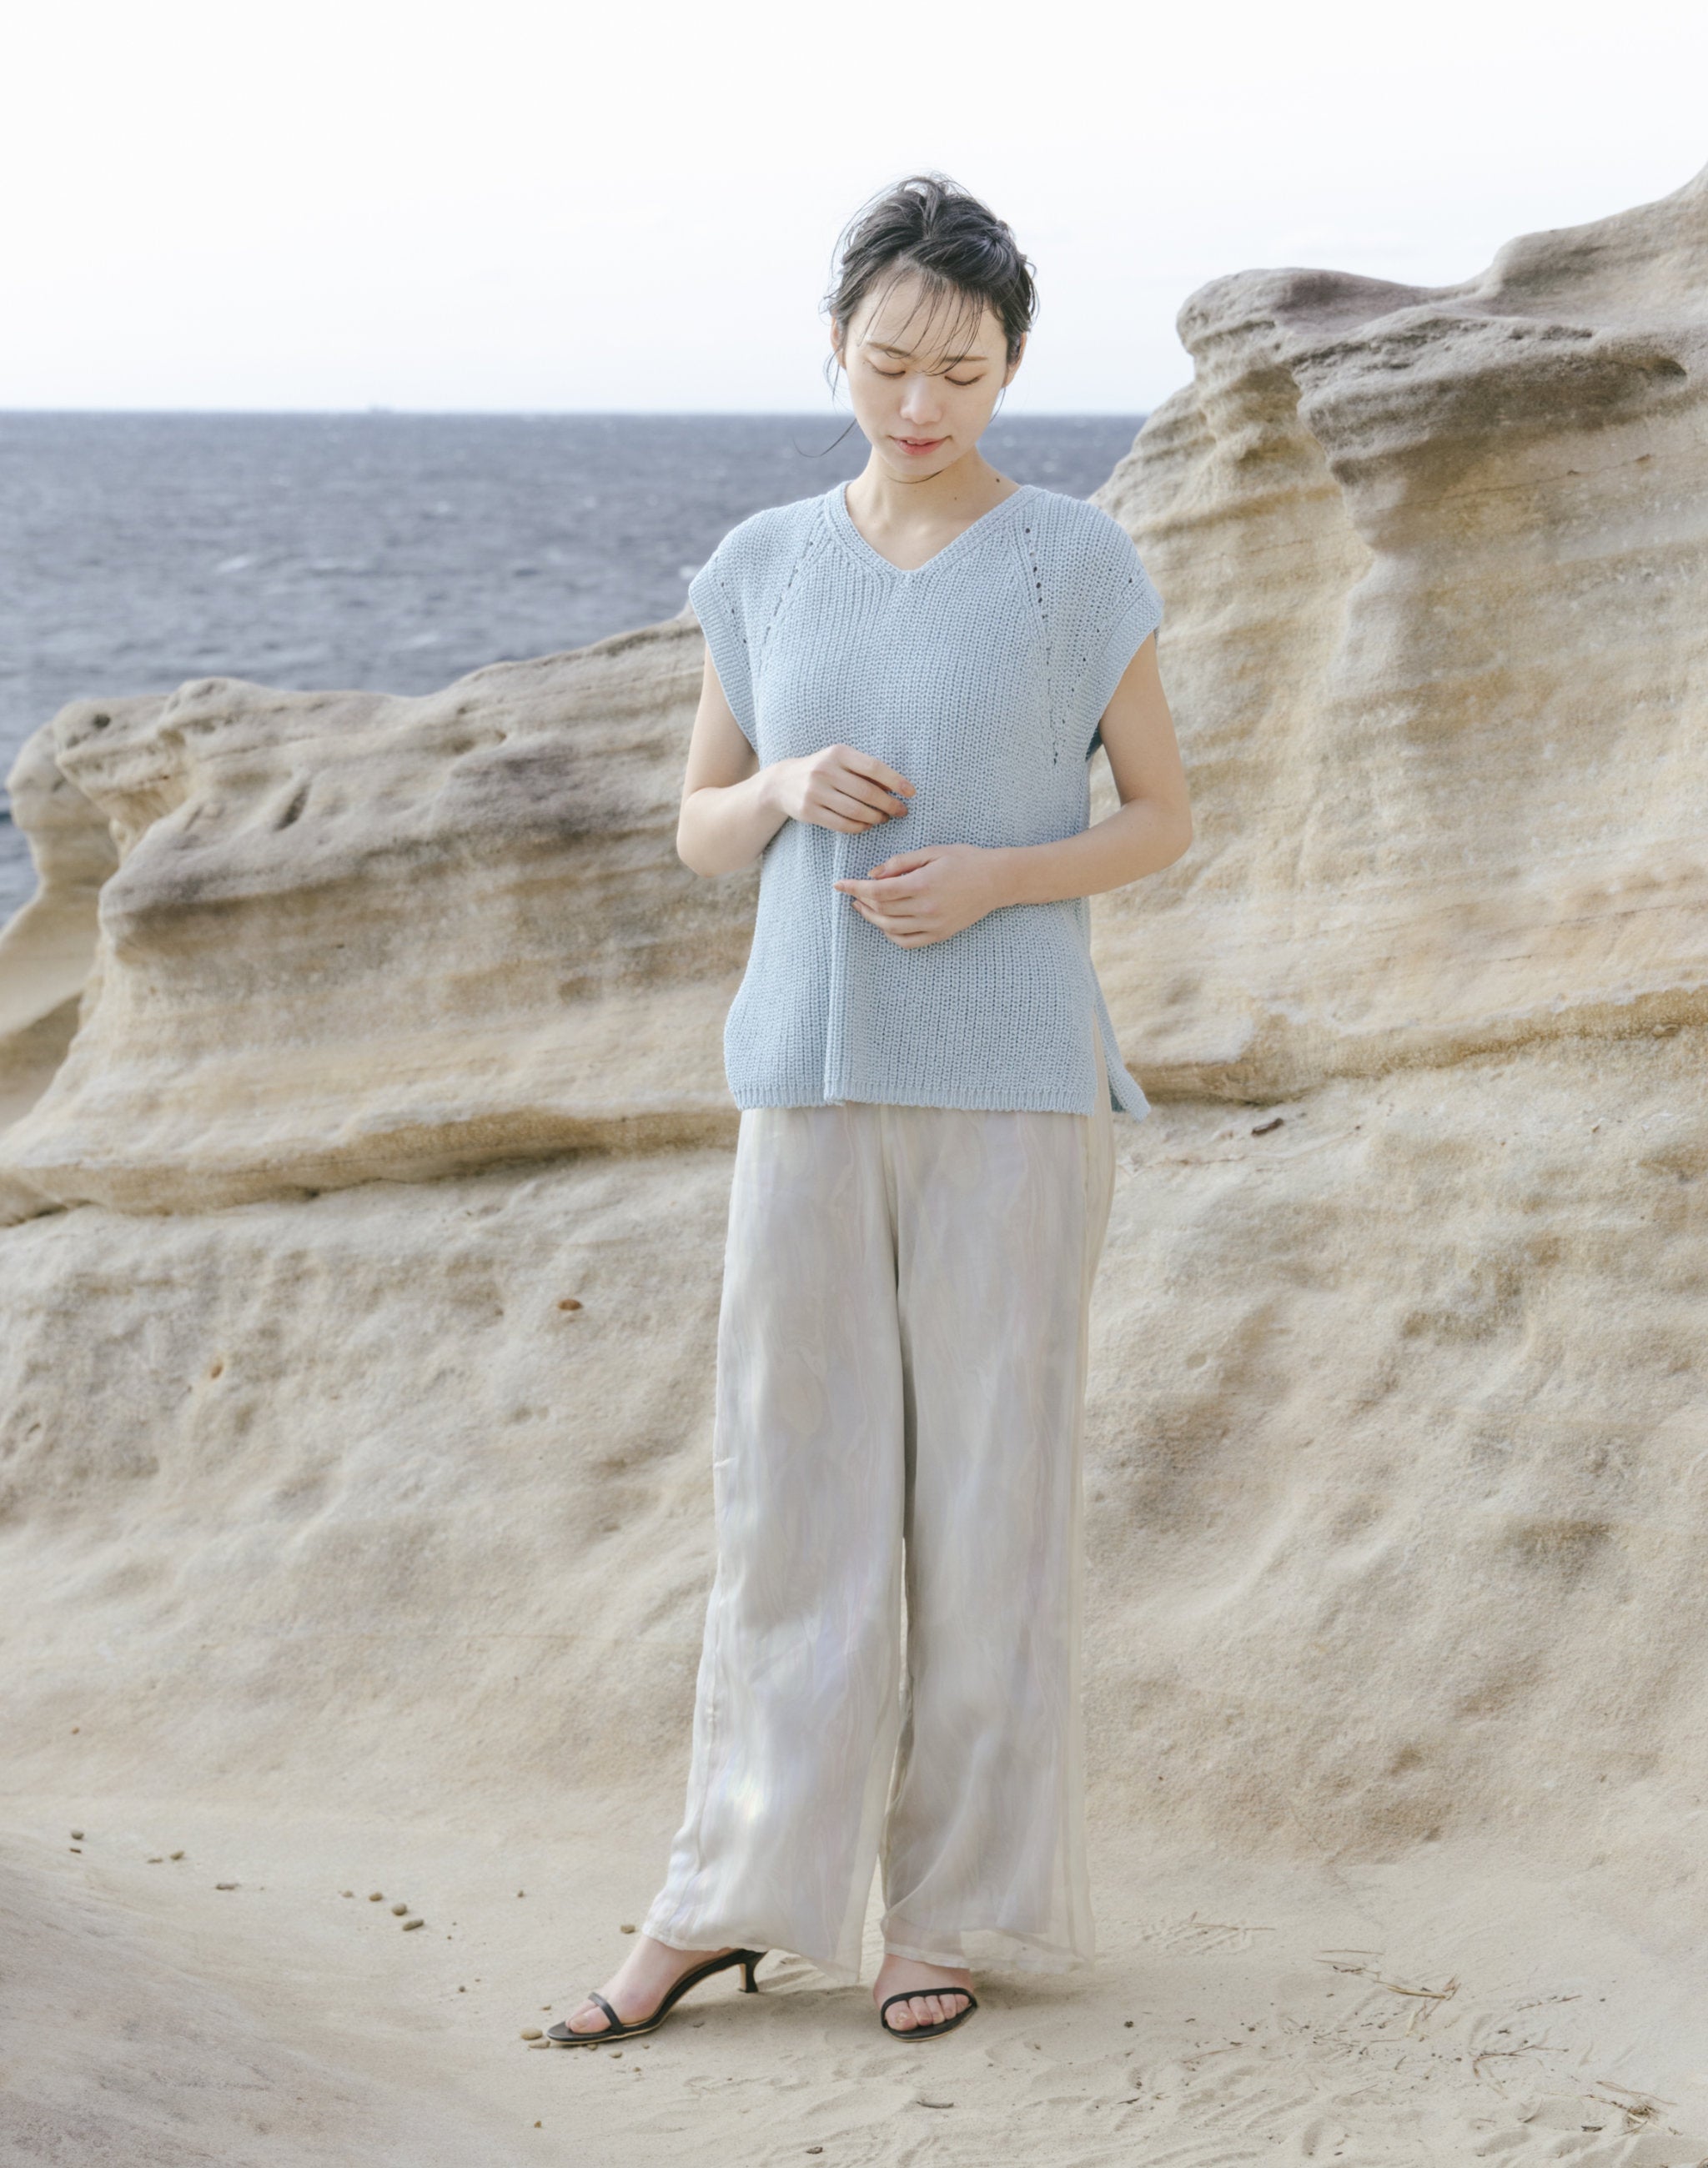 片畦ベスト 日本製 無縫製 夏服 サマーニット 軽い 涼しい 半袖 